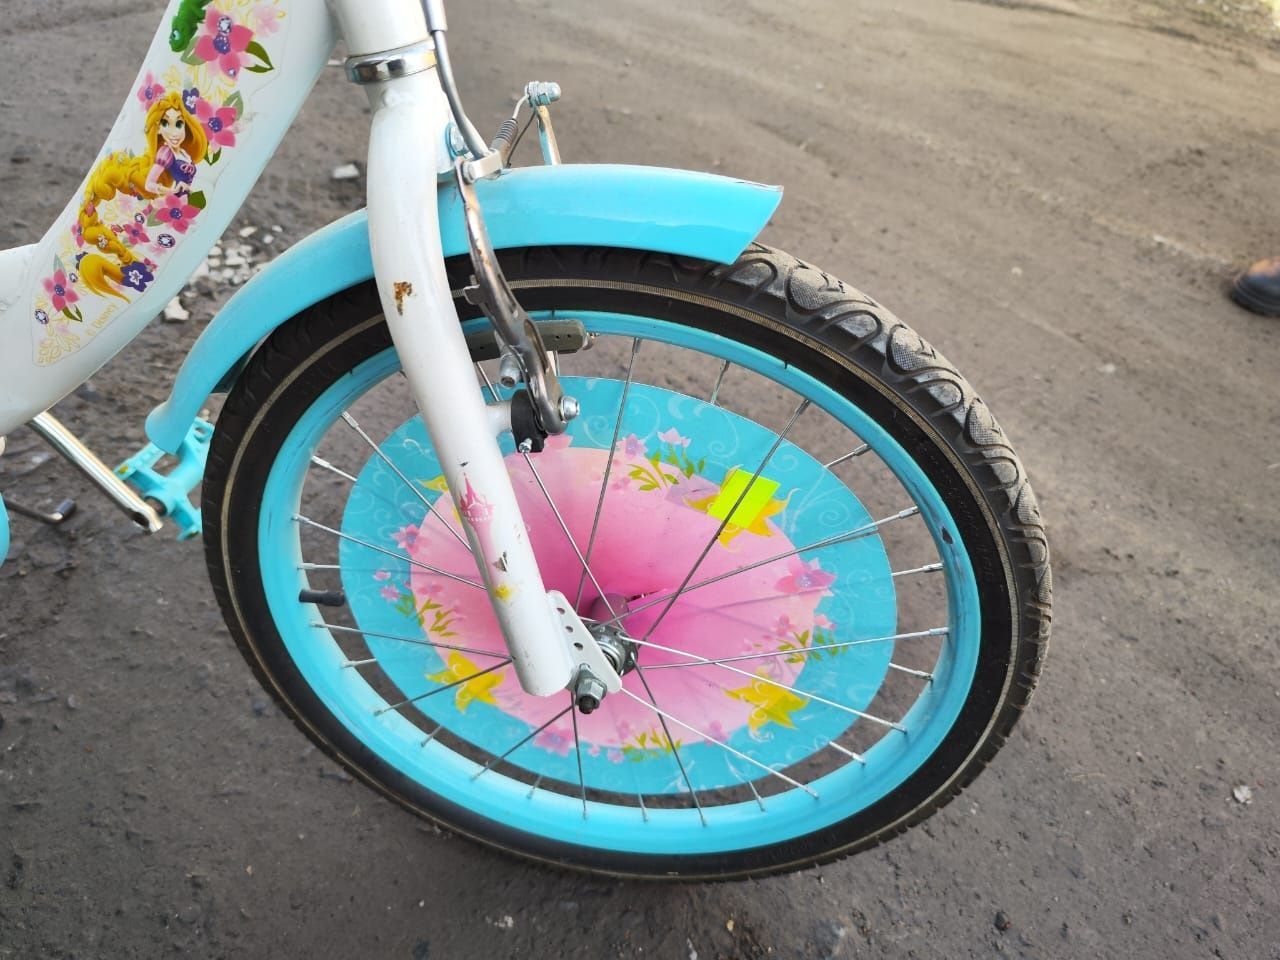 Продам дитячий велосипед Disney для дівчинки 7-10 років